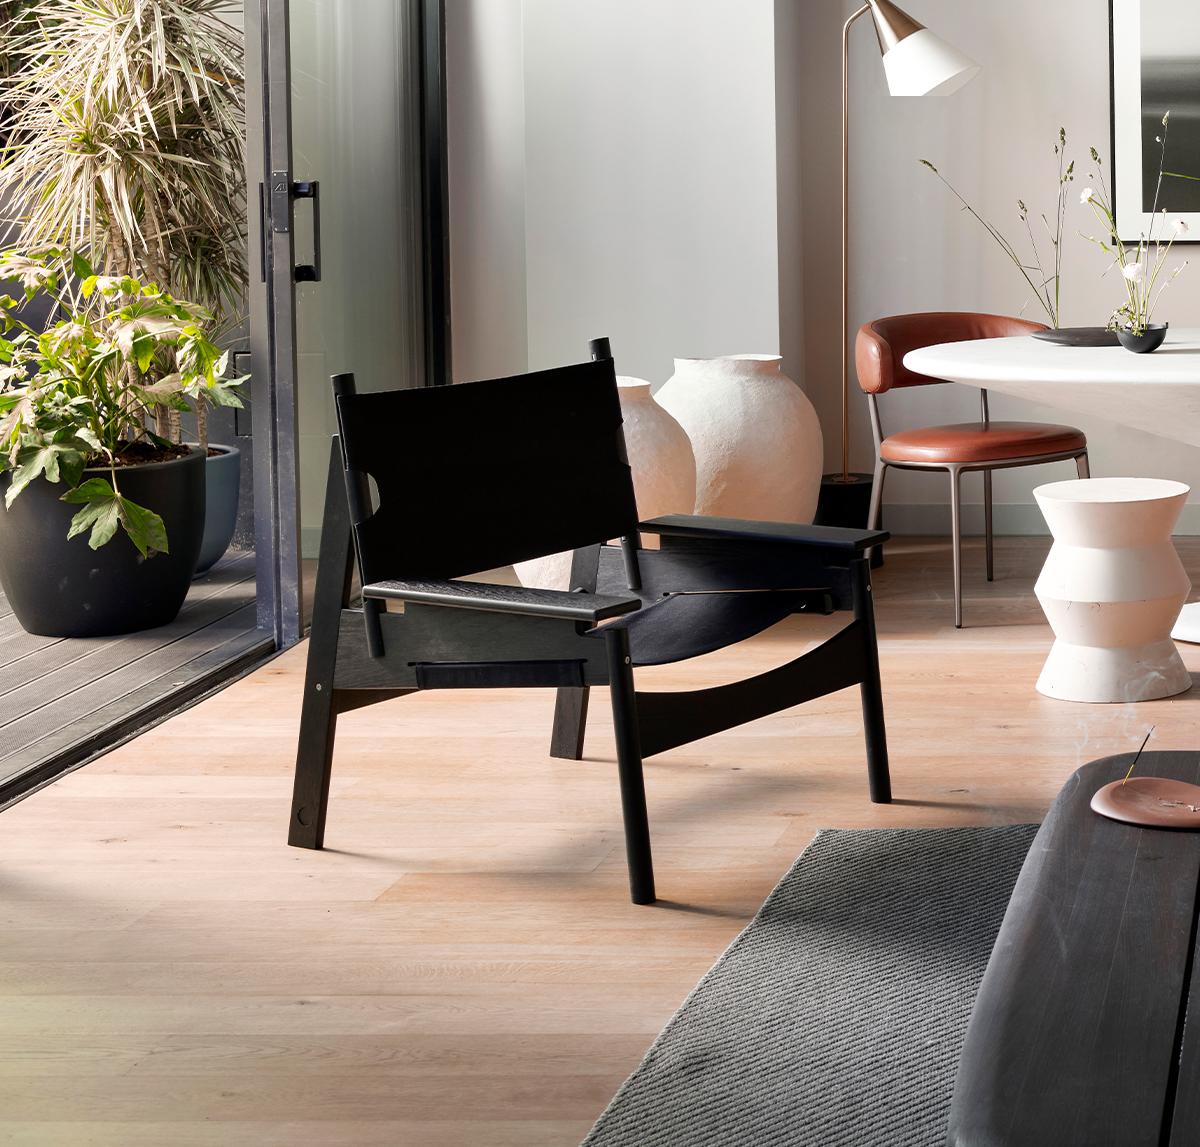 Frame Lounge Chair ist ein von skulpturalen Formen inspiriertes Sitzmöbel mit einem breiteren und niedrigeren Design, das demjenigen, der sich darauf niederlässt, das Gefühl eines Kokons vermittelt.
Mit der Idee, einen gemütlichen Stuhl zu schaffen,